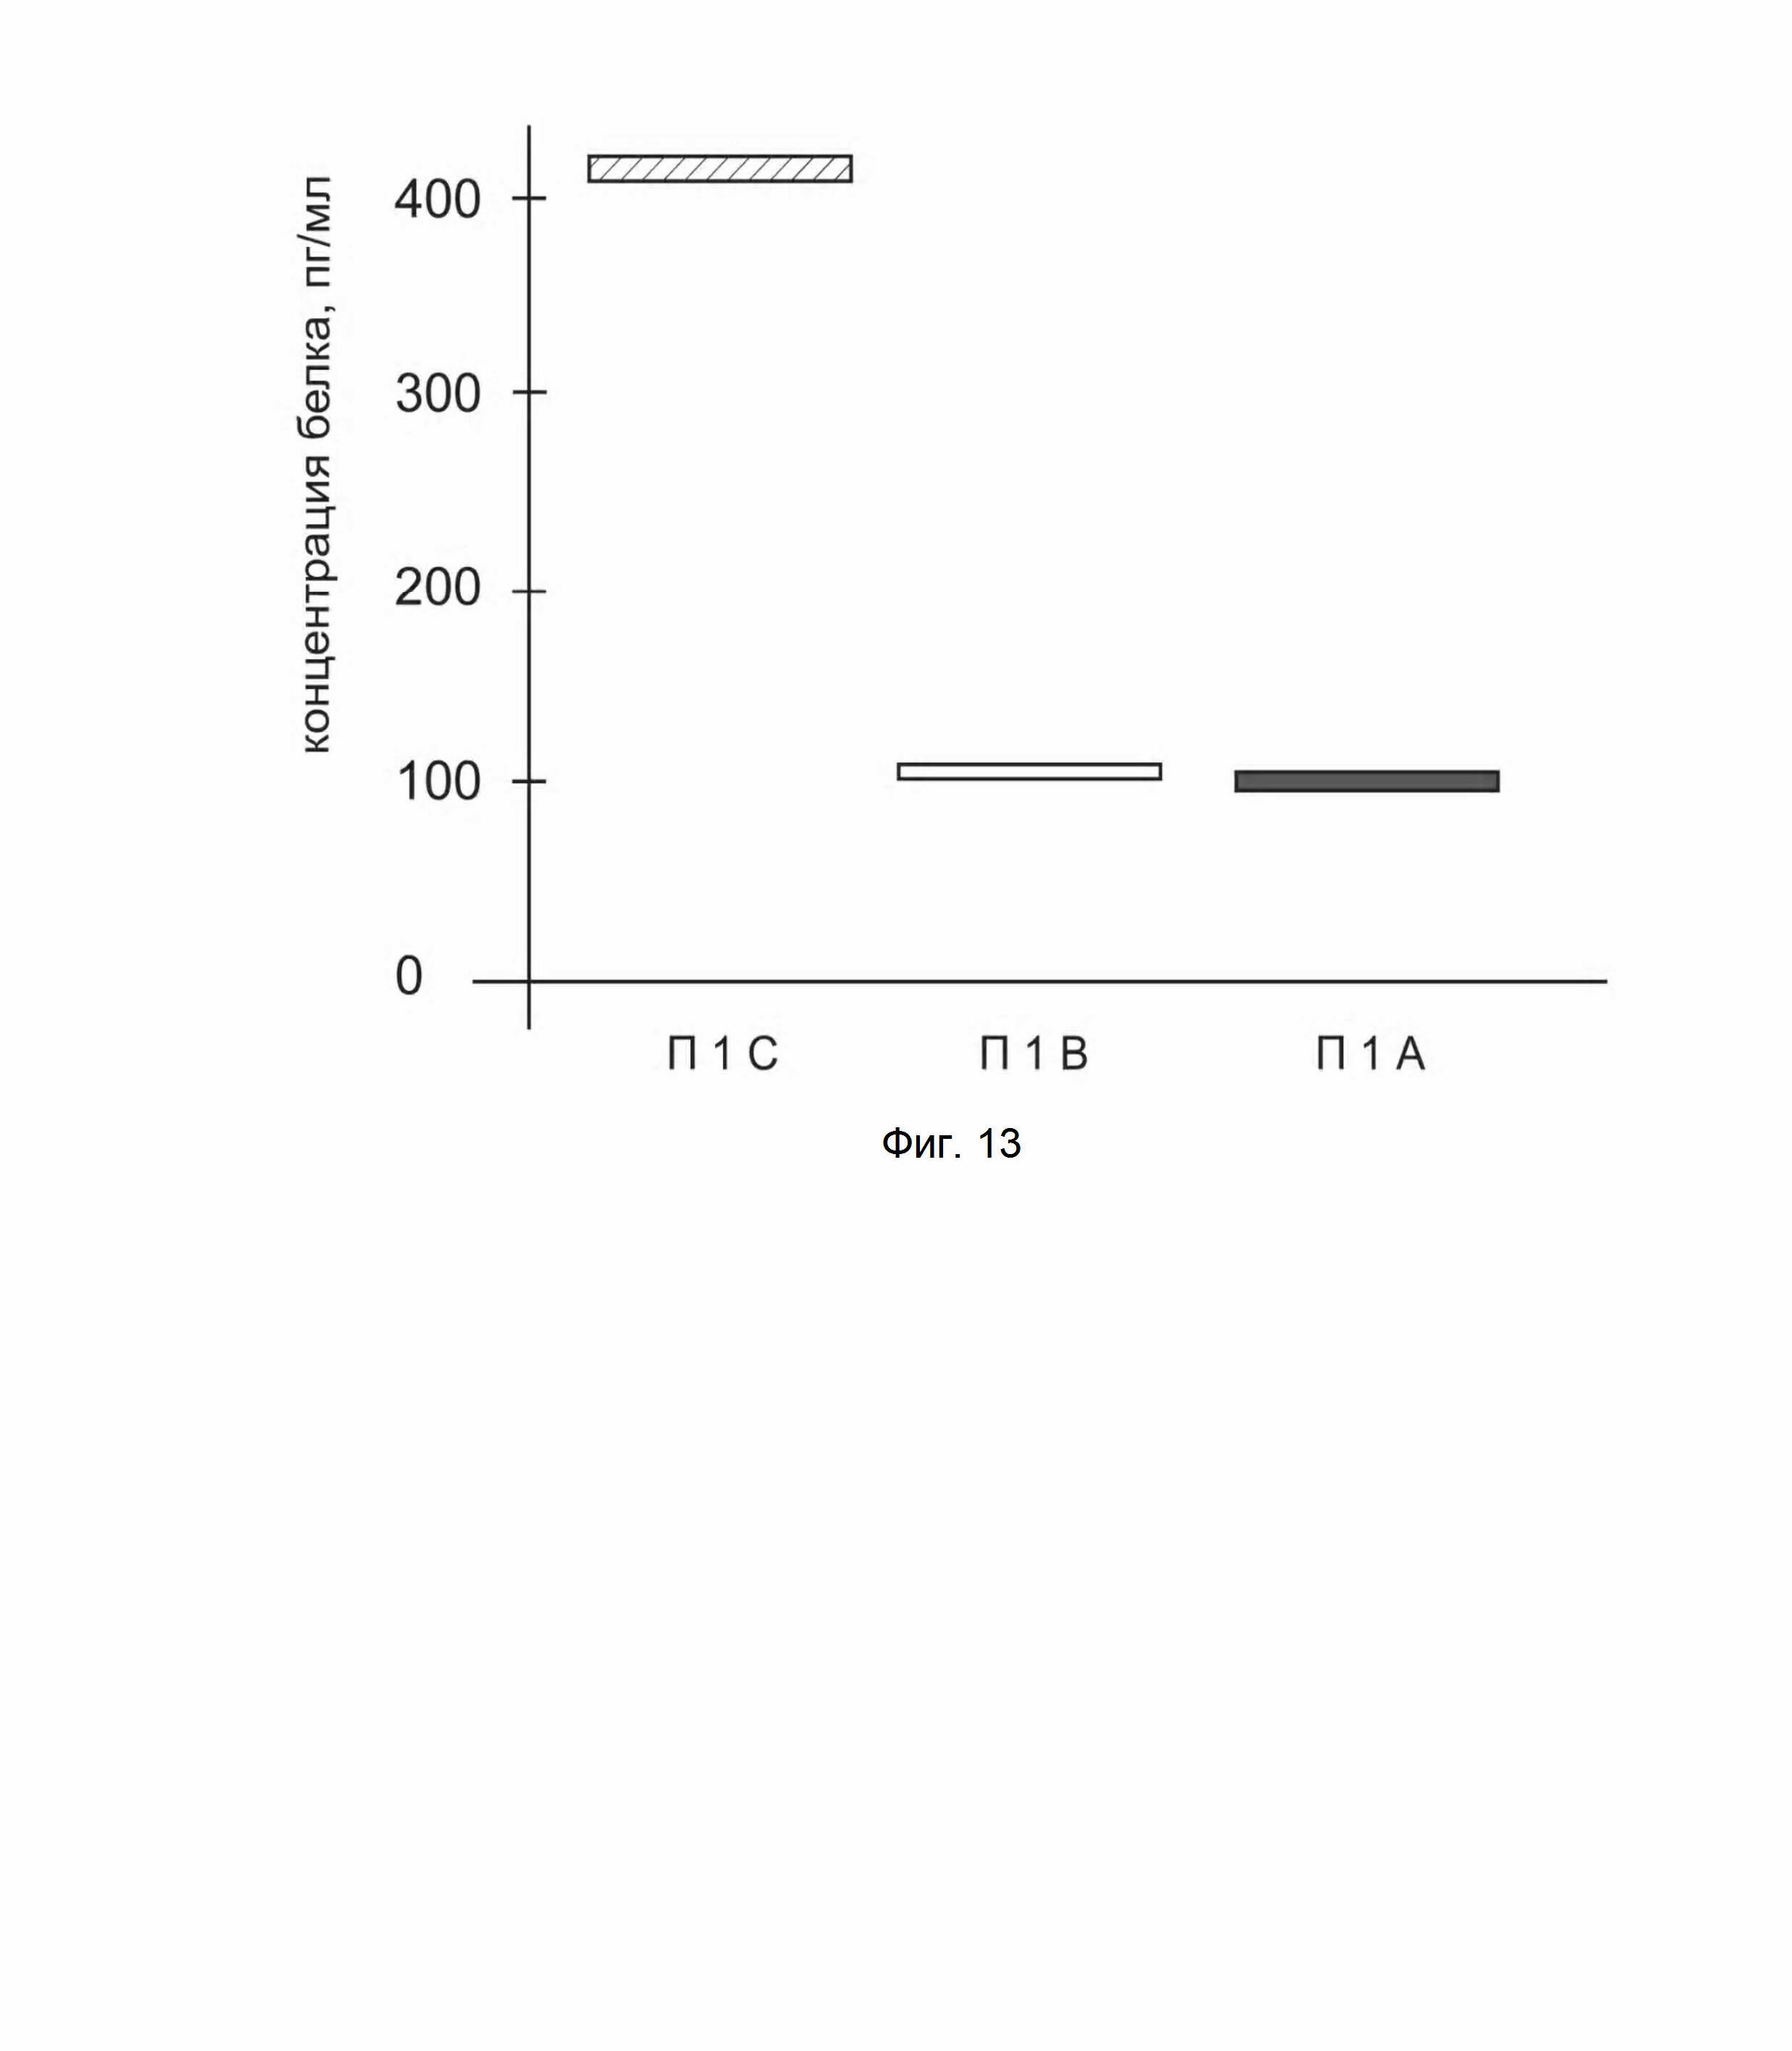 ДНК-вектор GDTT1.8NAS12-HIF1α для повышения уровня экспрессии целевого гена HIF1α и способ применения